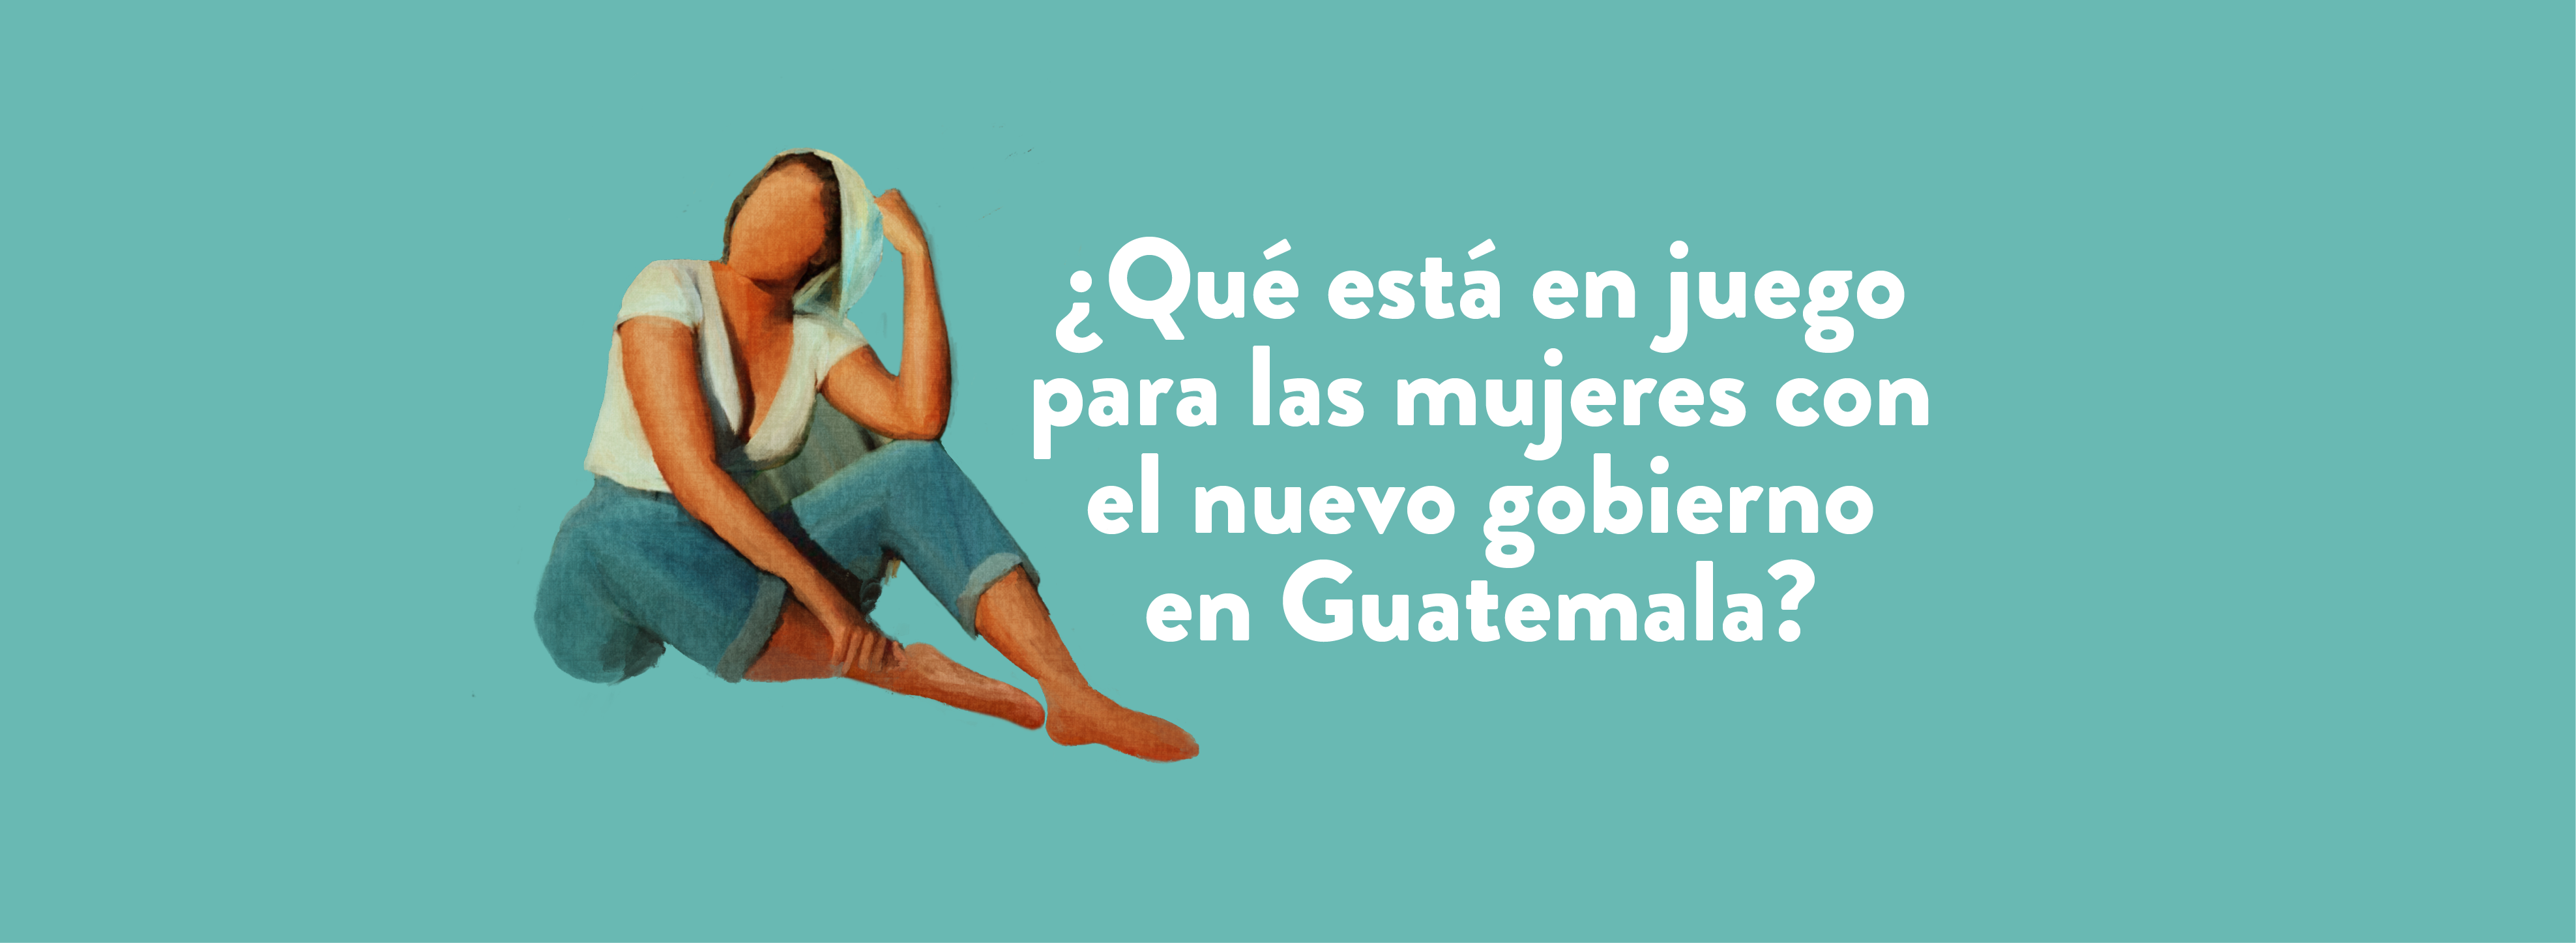 ¿Qué está en juego para las mujeres con el futuro gobierno en Guatemala?  